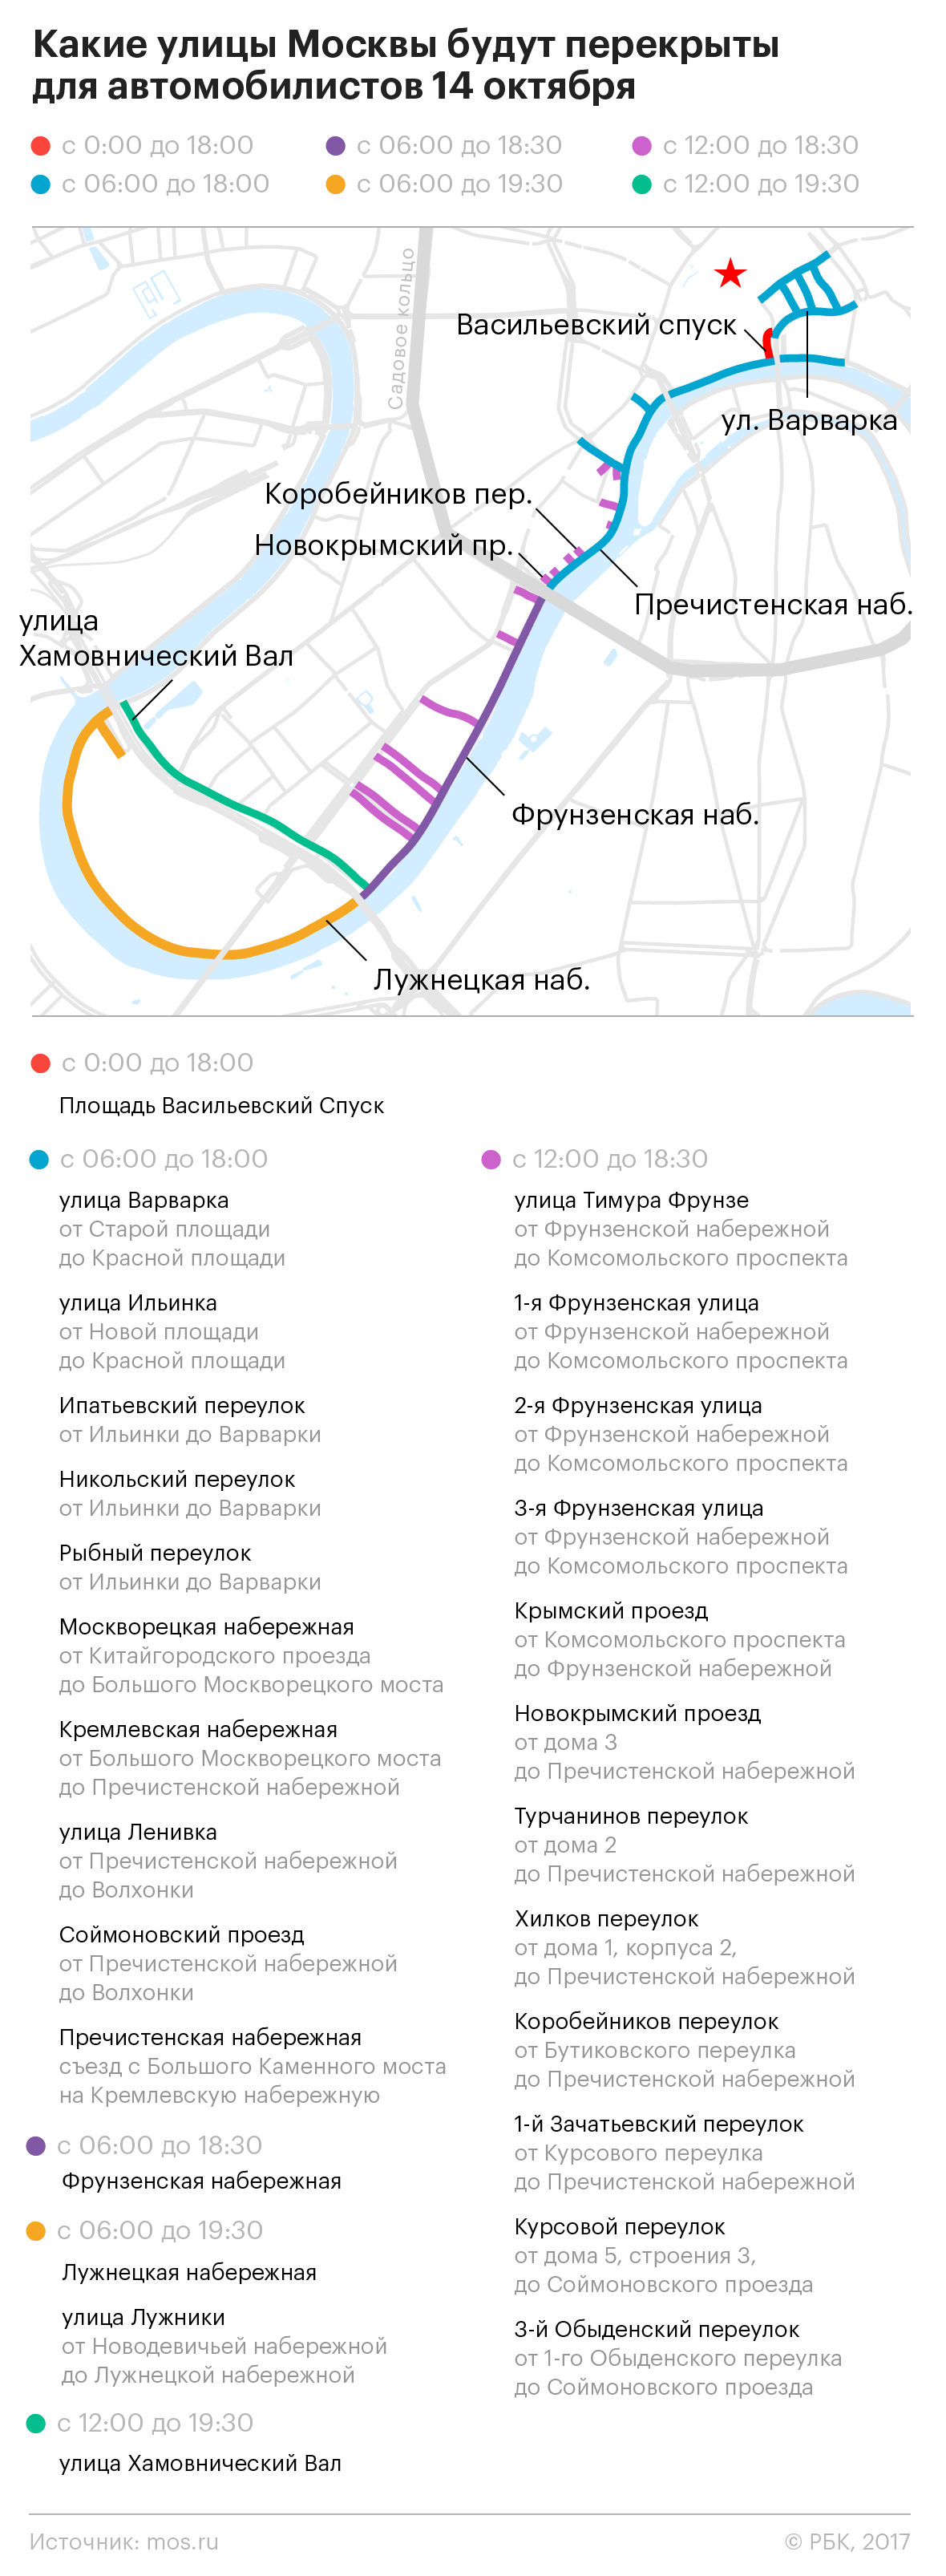 Карнавальное стояние: карта перекрытий улиц в Москве в выходные